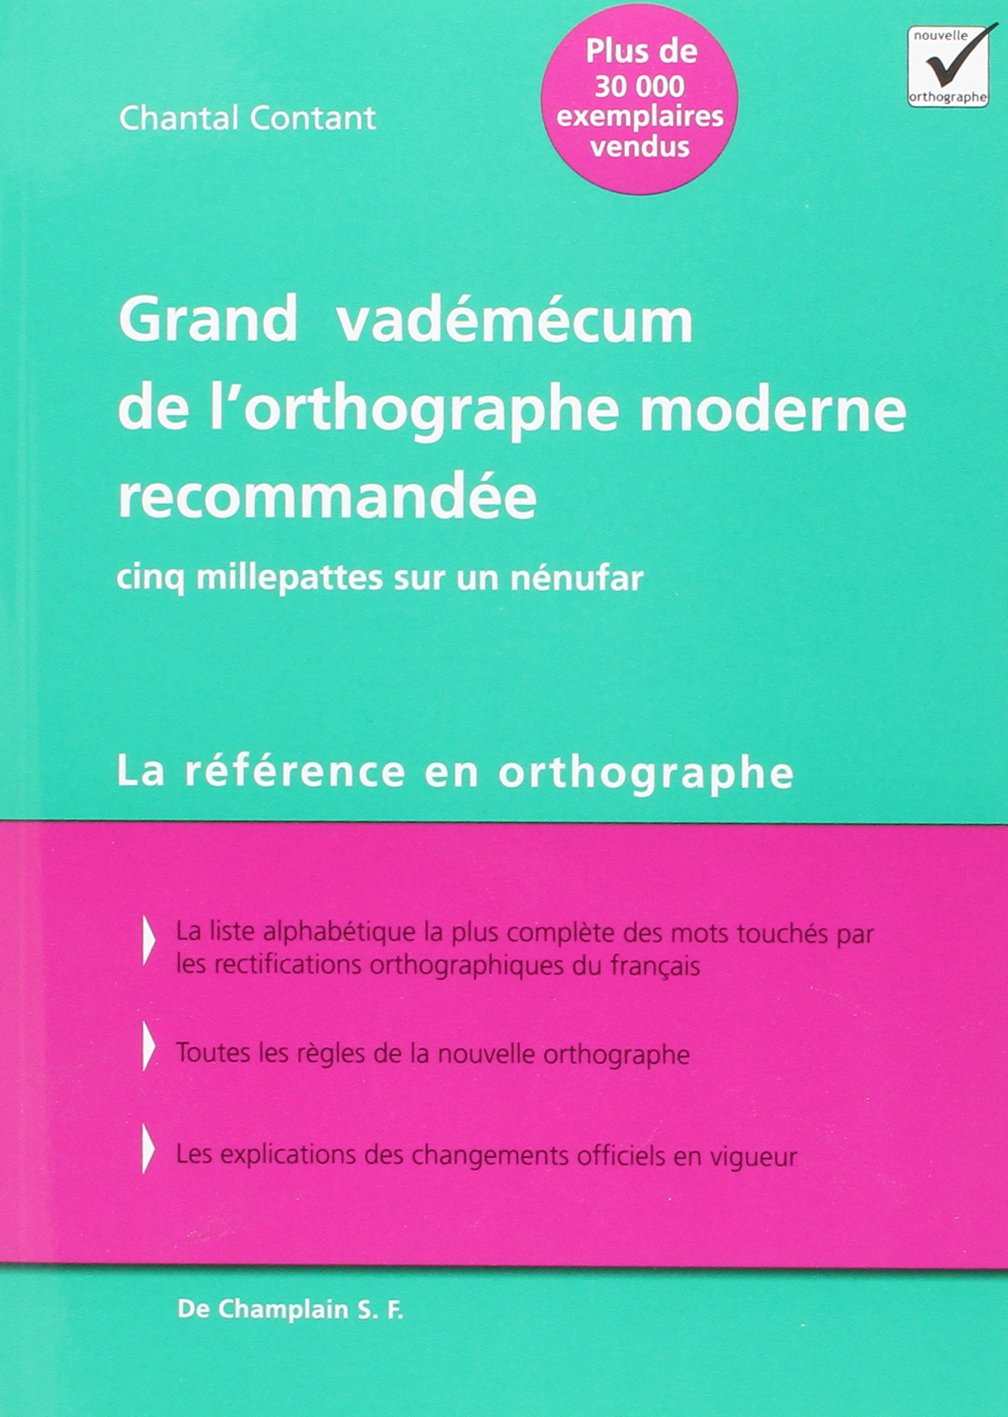 Livre ISBN 2980872024 Grand vadémécum de l'orthographe moderne recommandée : Cinq millepattes sur un nénufar  - La référence en orthographe (Chantal Contant)